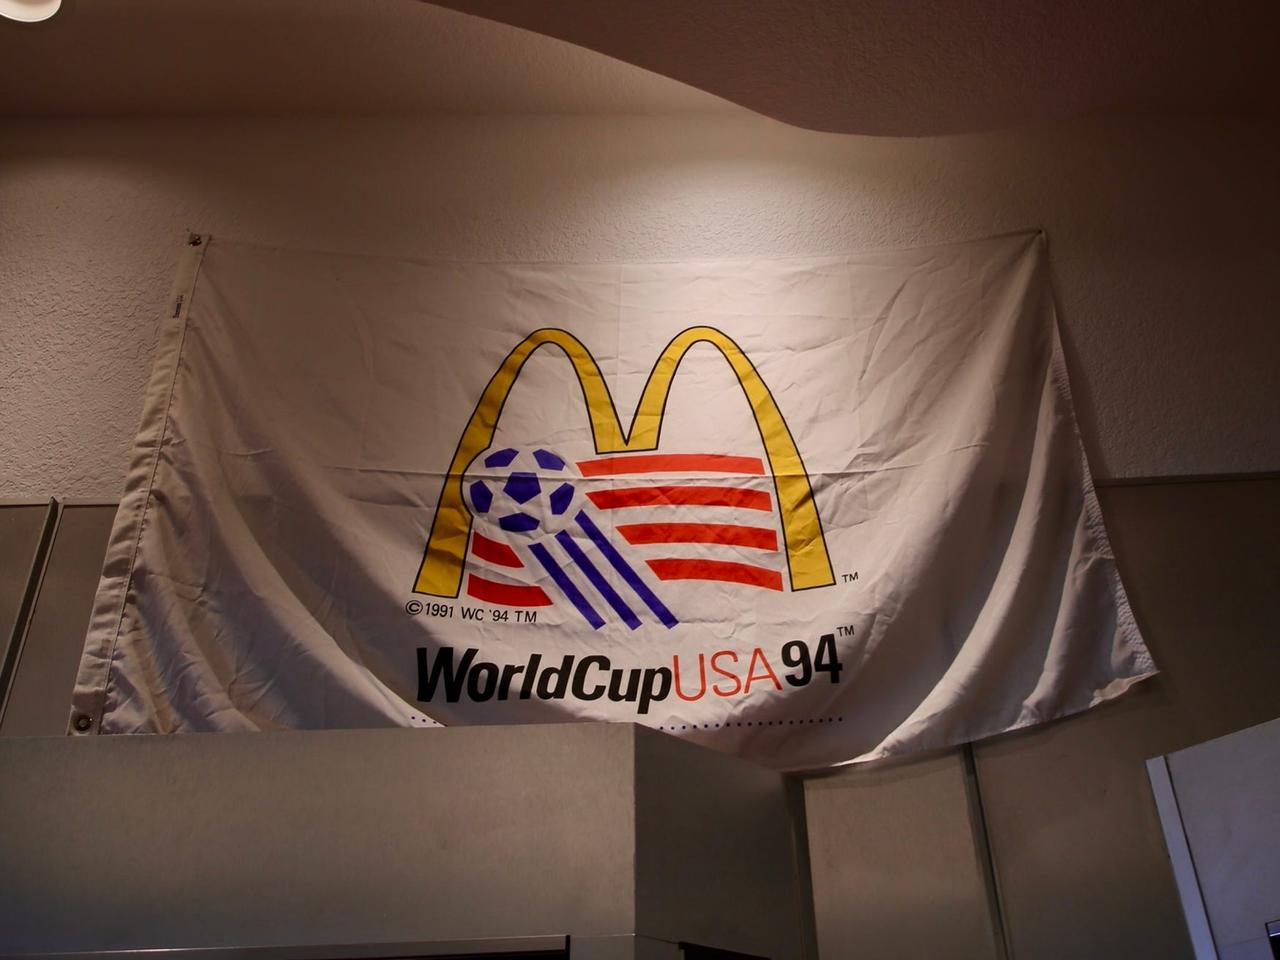 その意味で、1994年のマクドナルドUSAワールドカップの旗は、マクドナルドとアメリカが切っても切れない関係にあることを決定的なものにしたように感じられた